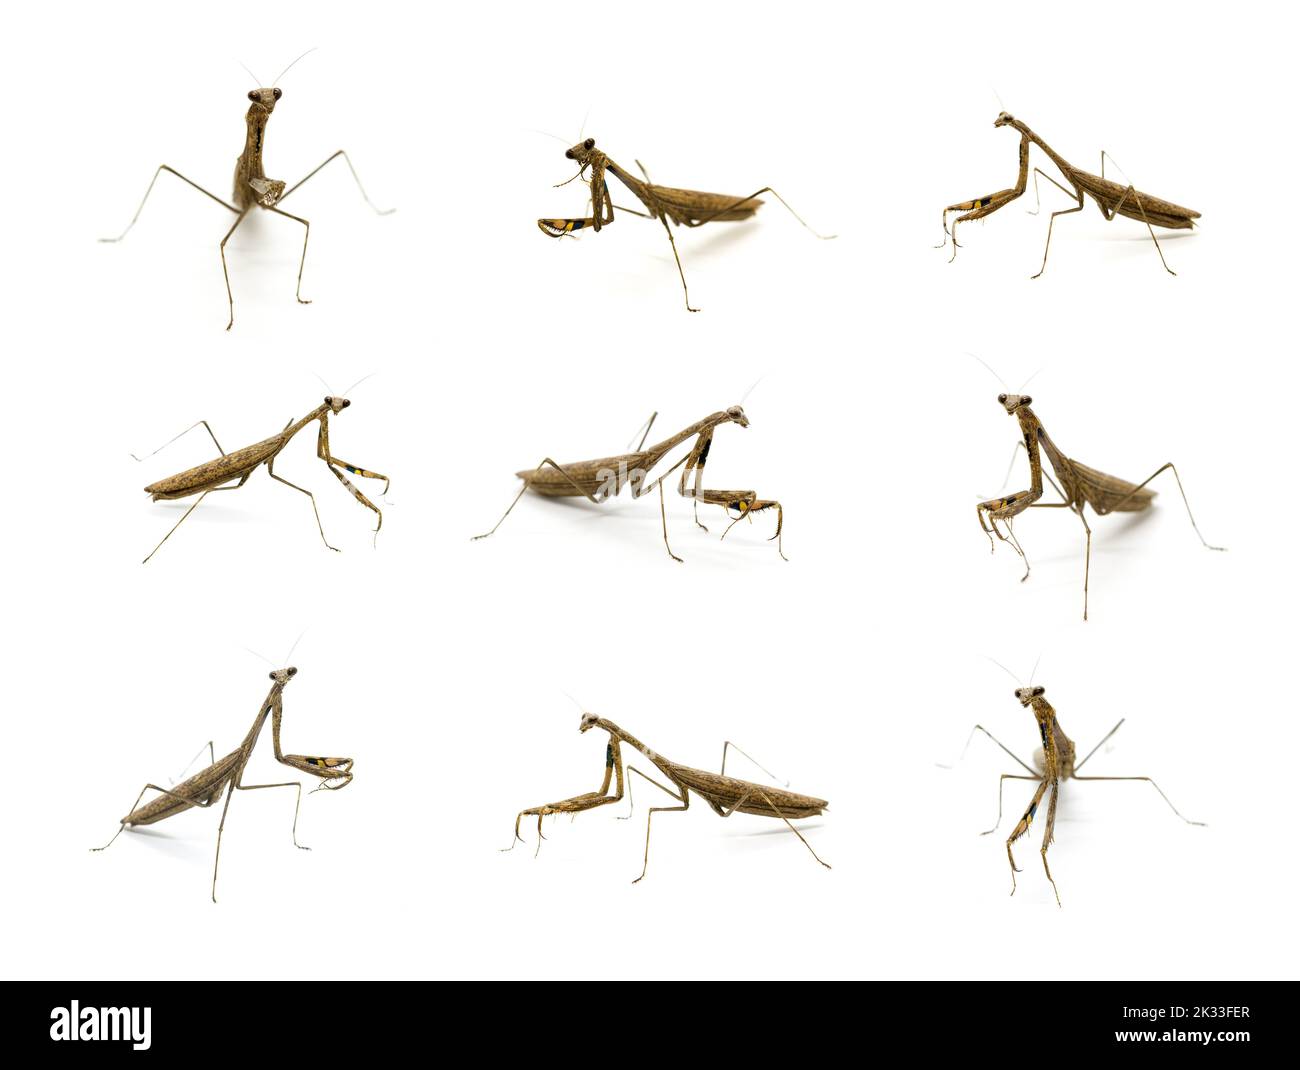 Groupe de mantis de prière (Stagmomantis carolina) sur fond blanc. Insecte. Animal. Banque D'Images